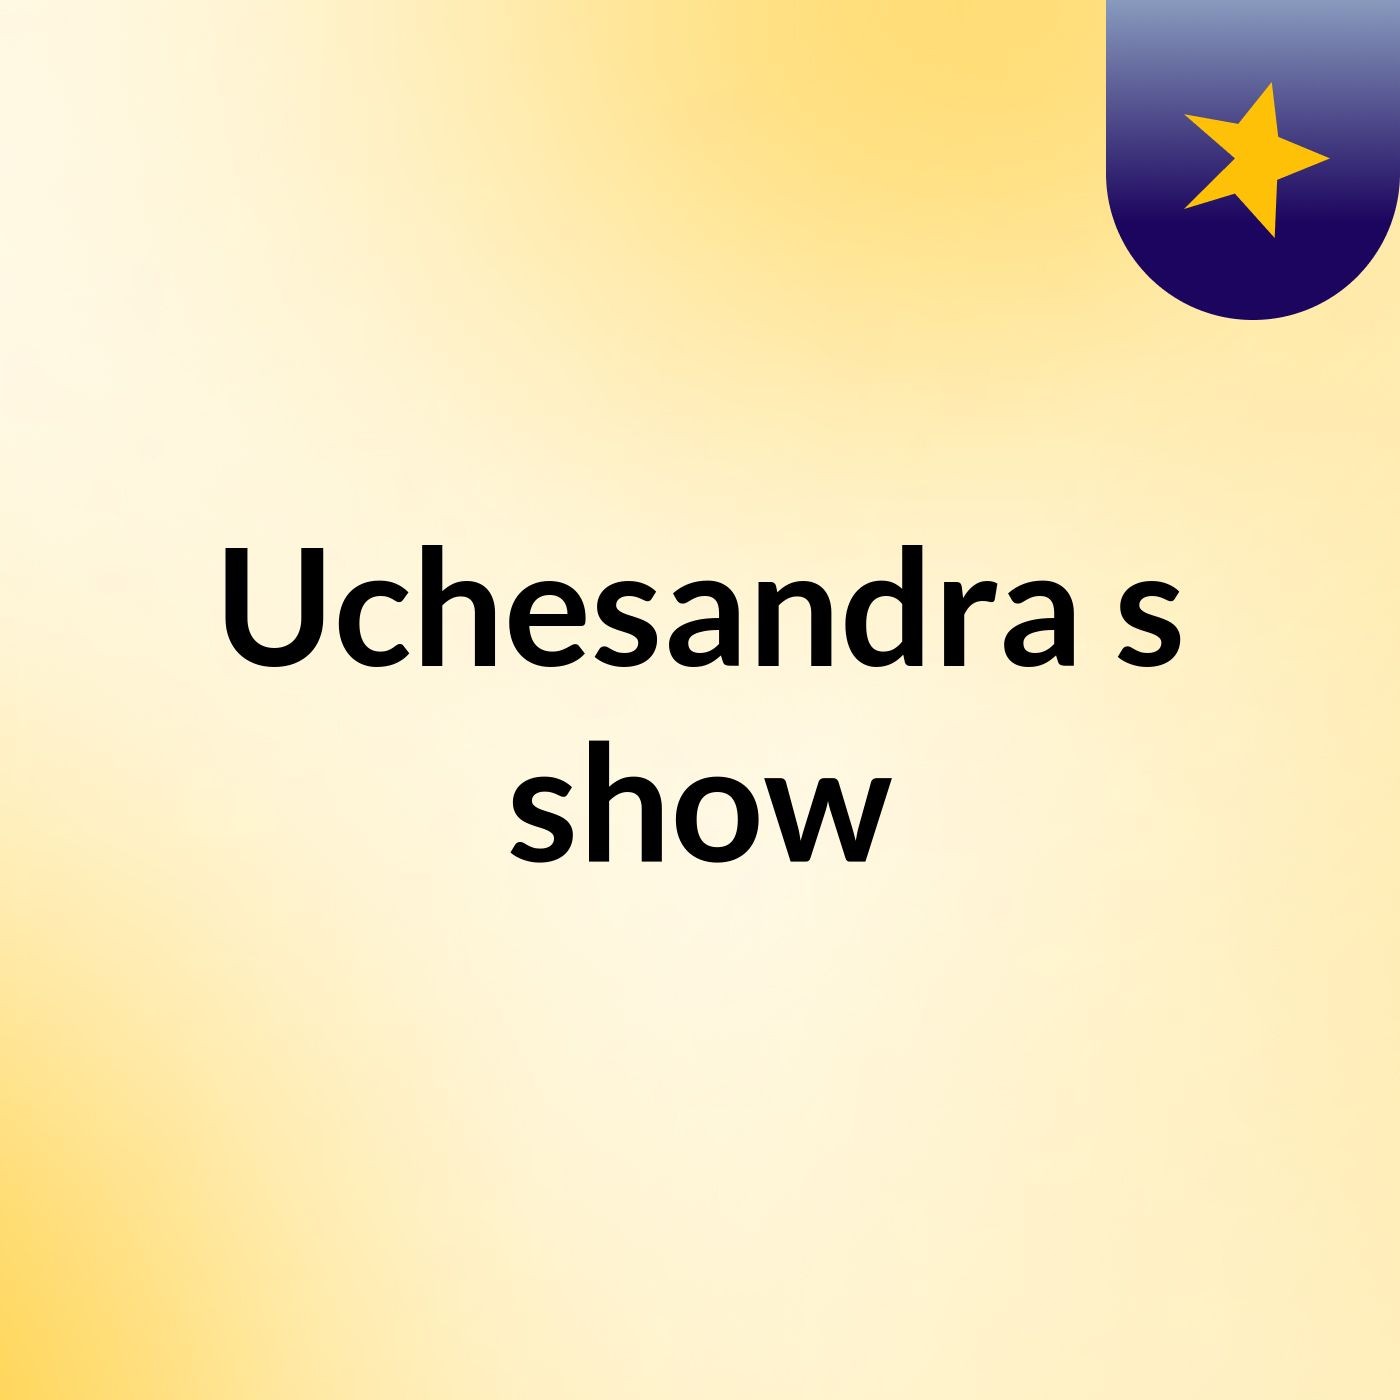 Uchesandra's show